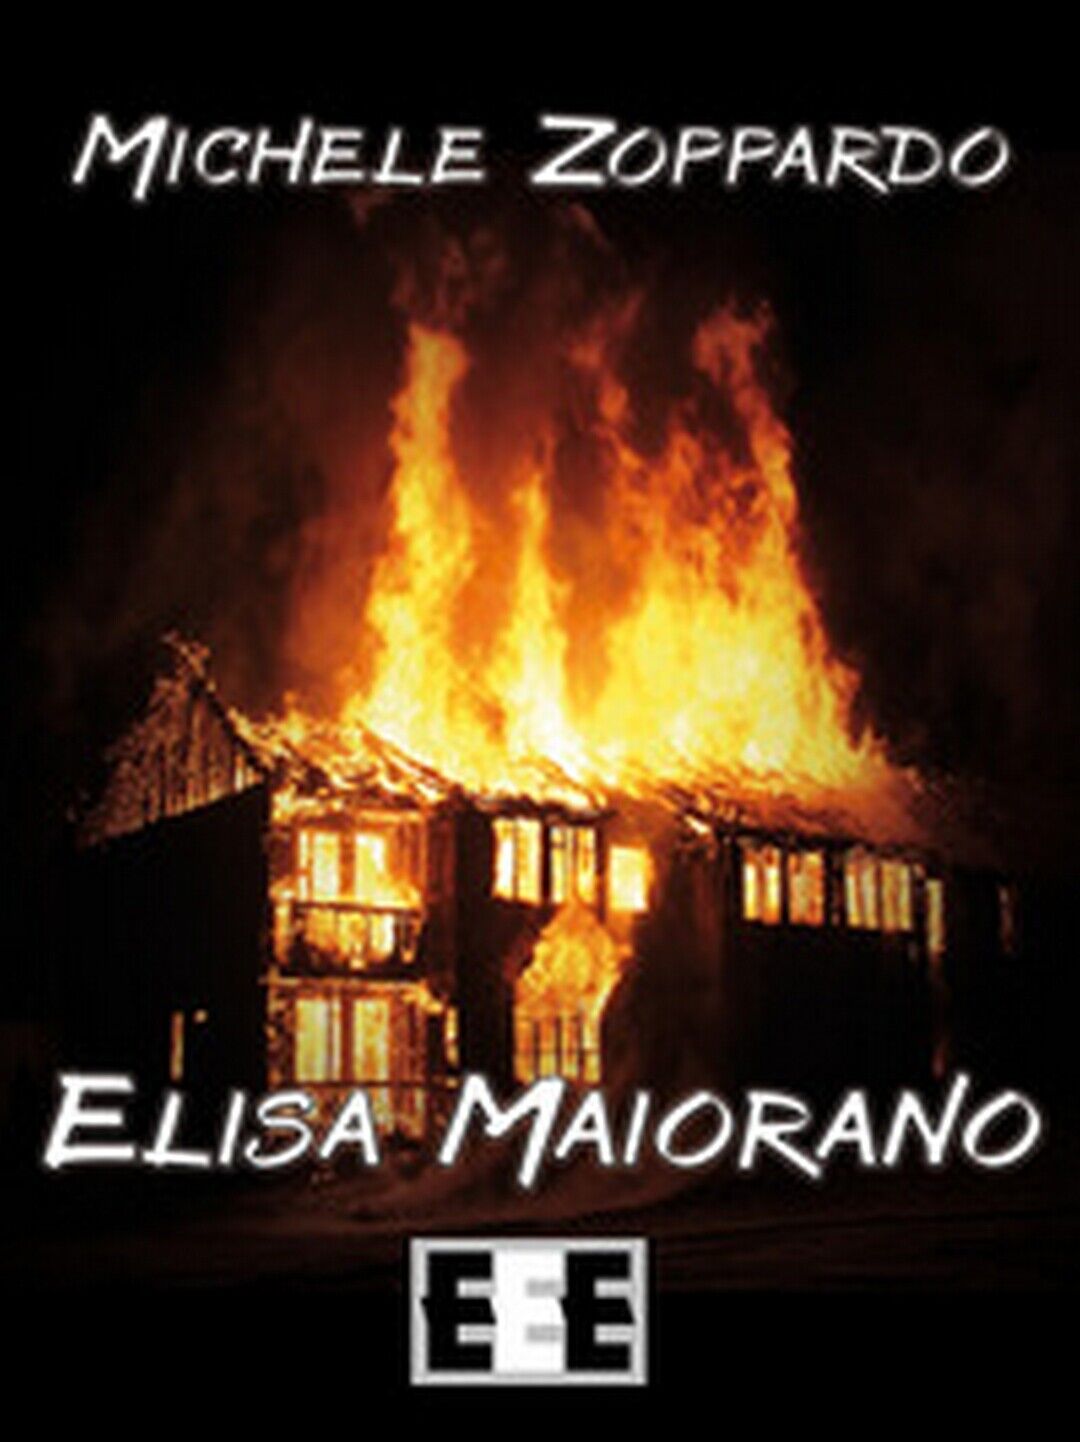 Elisa Maiorano  di Zoppardo Michele,  2019,  Eee-edizioni Esordienti